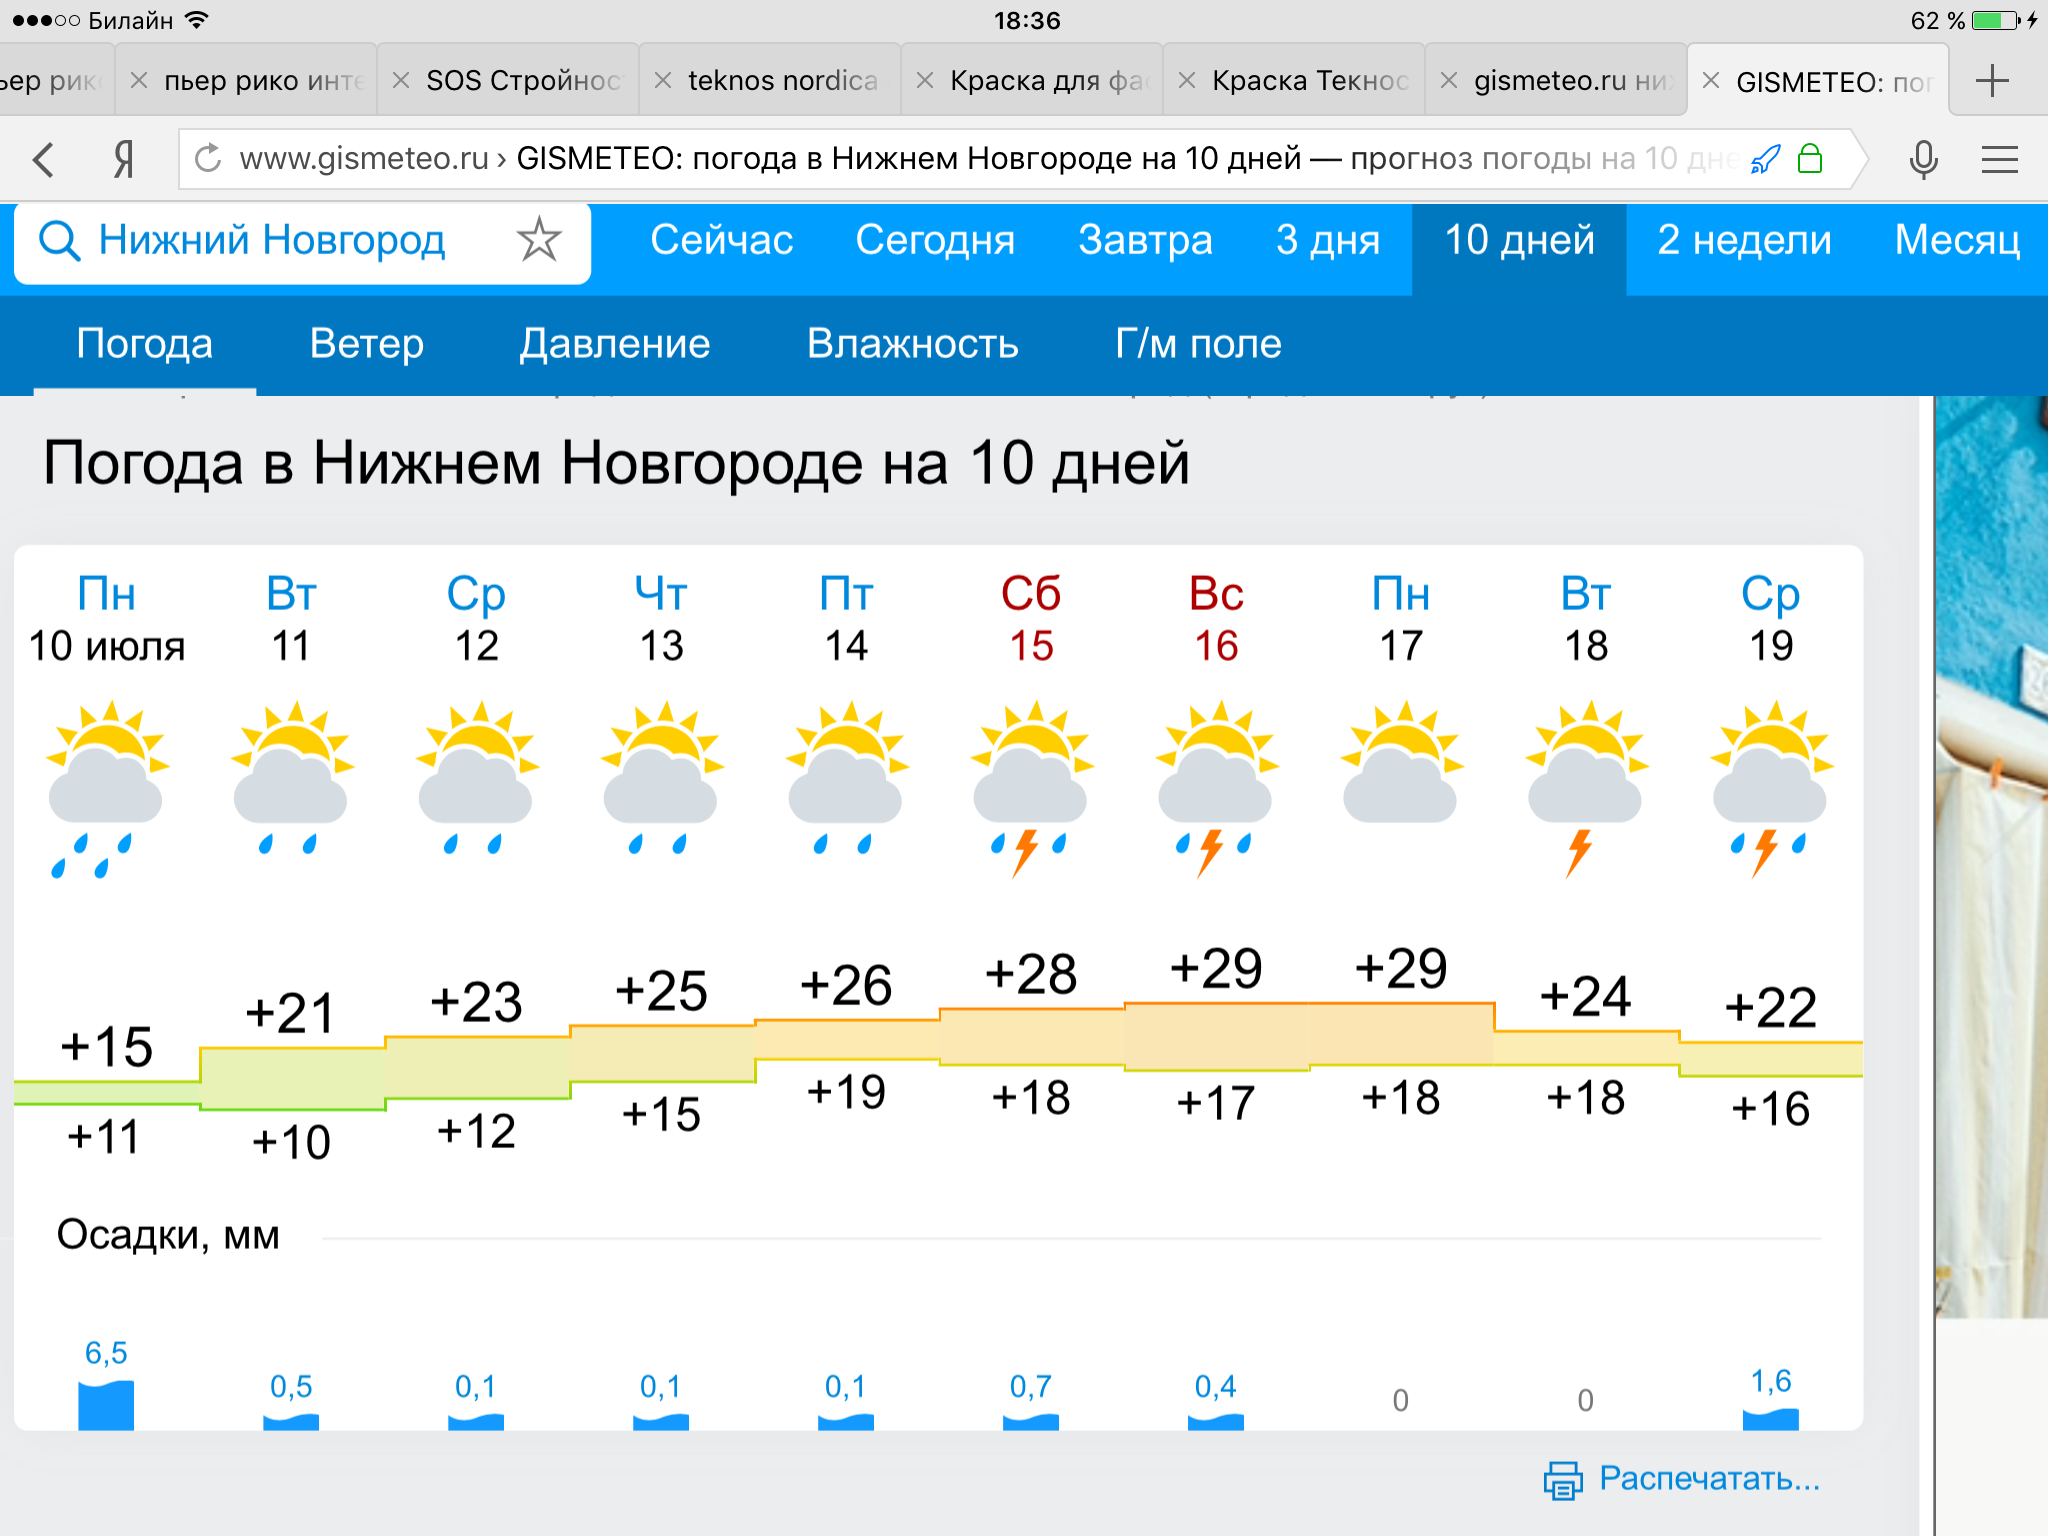 Погода в н новгороде сегодня. Прогноз погоды в Нижнем Новгороде. Погода в н жнем Новгороде. Погодавнижжнемновгороде. Погода в Нижнем Новгороде сегодня.